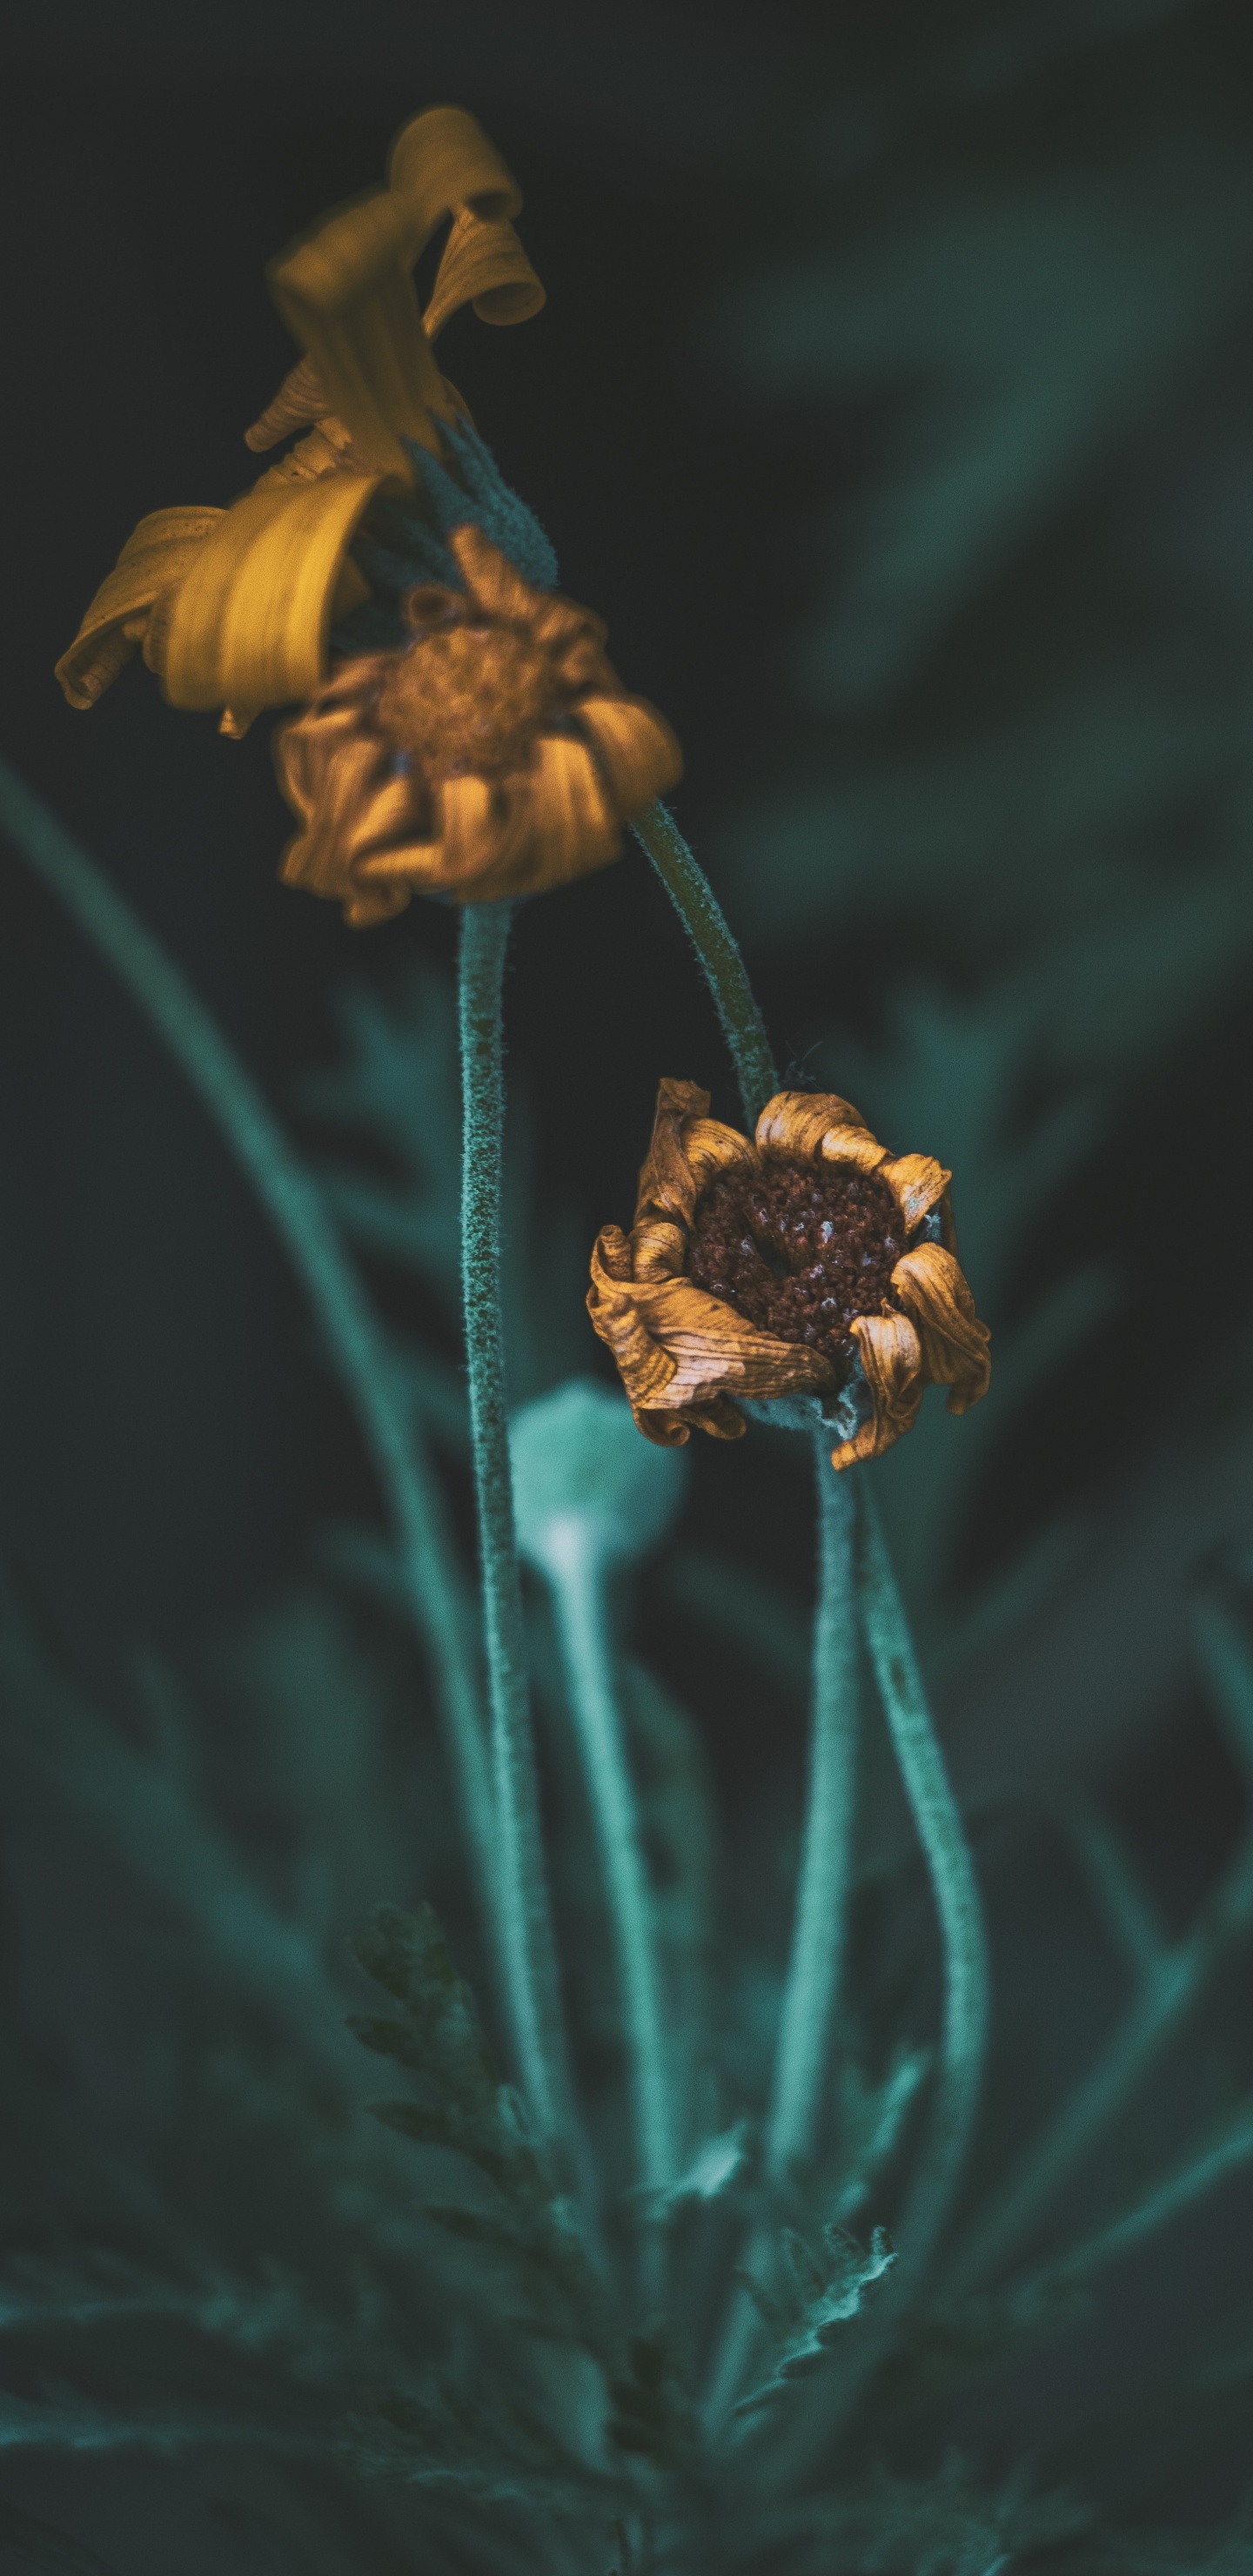 Yellow Flower in Tilt Shift Lens. Wallpaper in 1440x2960 Resolution